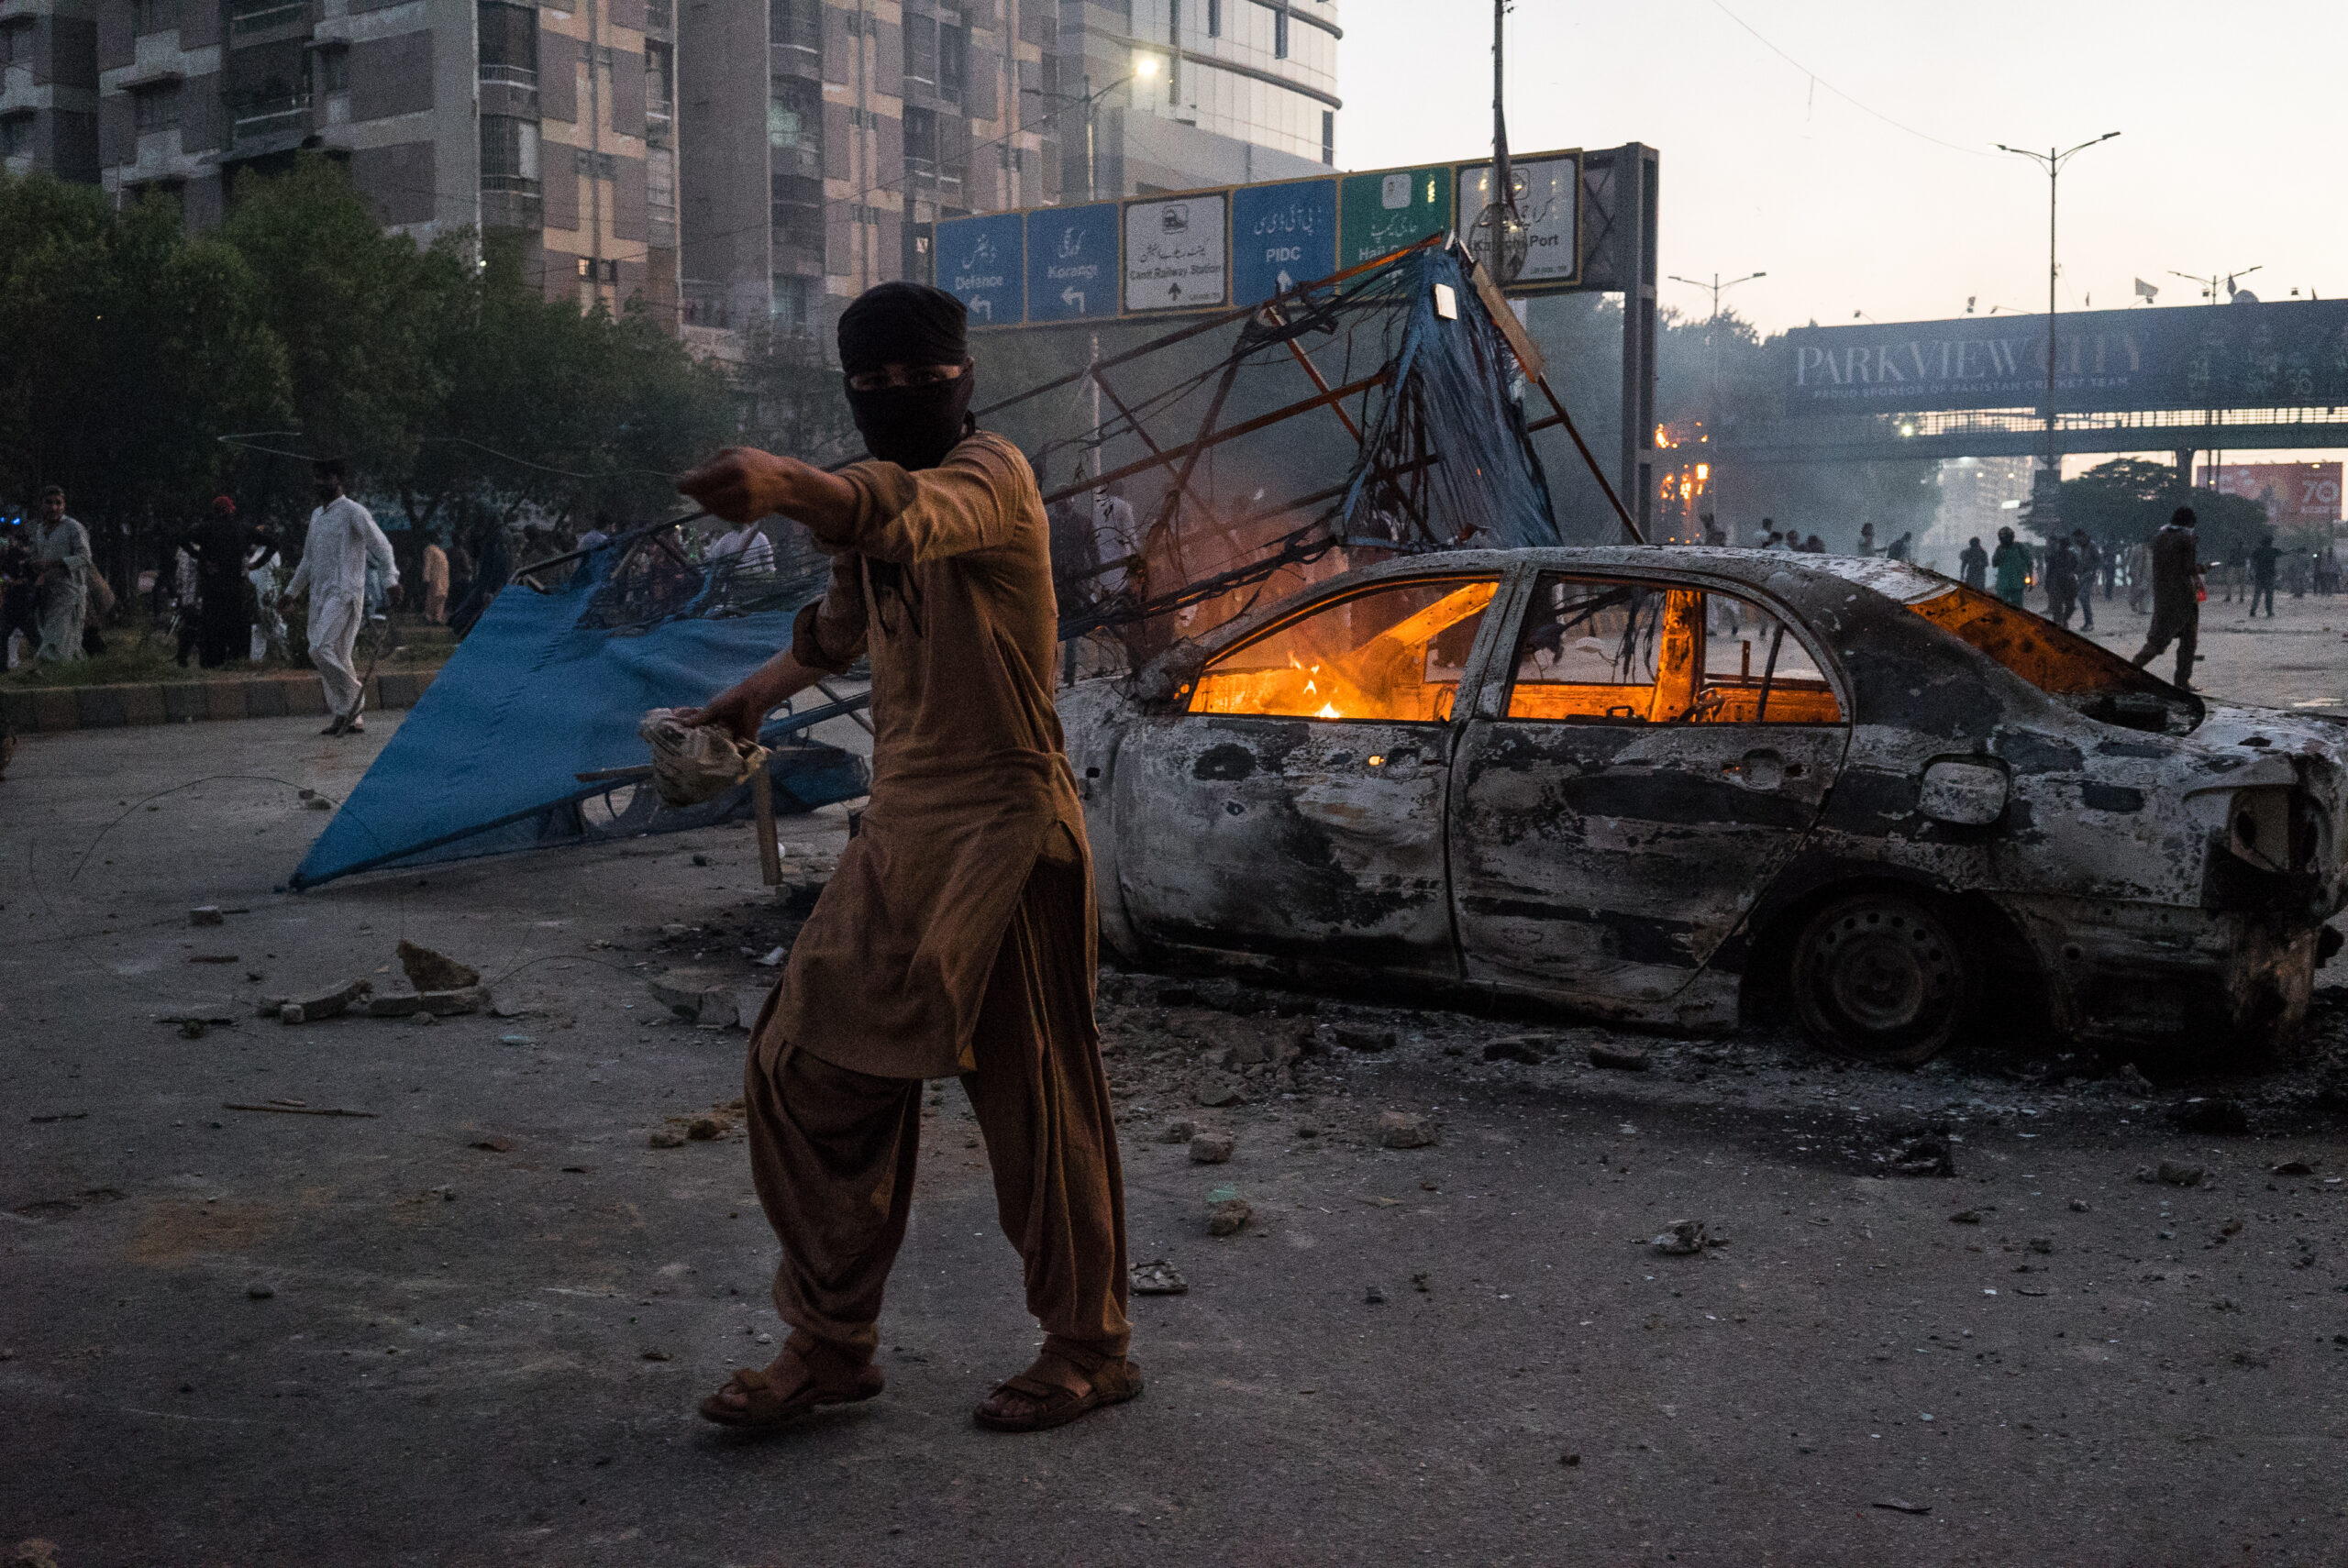 Partisan du PTI devant un véhicule incendié par les manifestants, Karachi, 9 mai. © Laurent Gayer